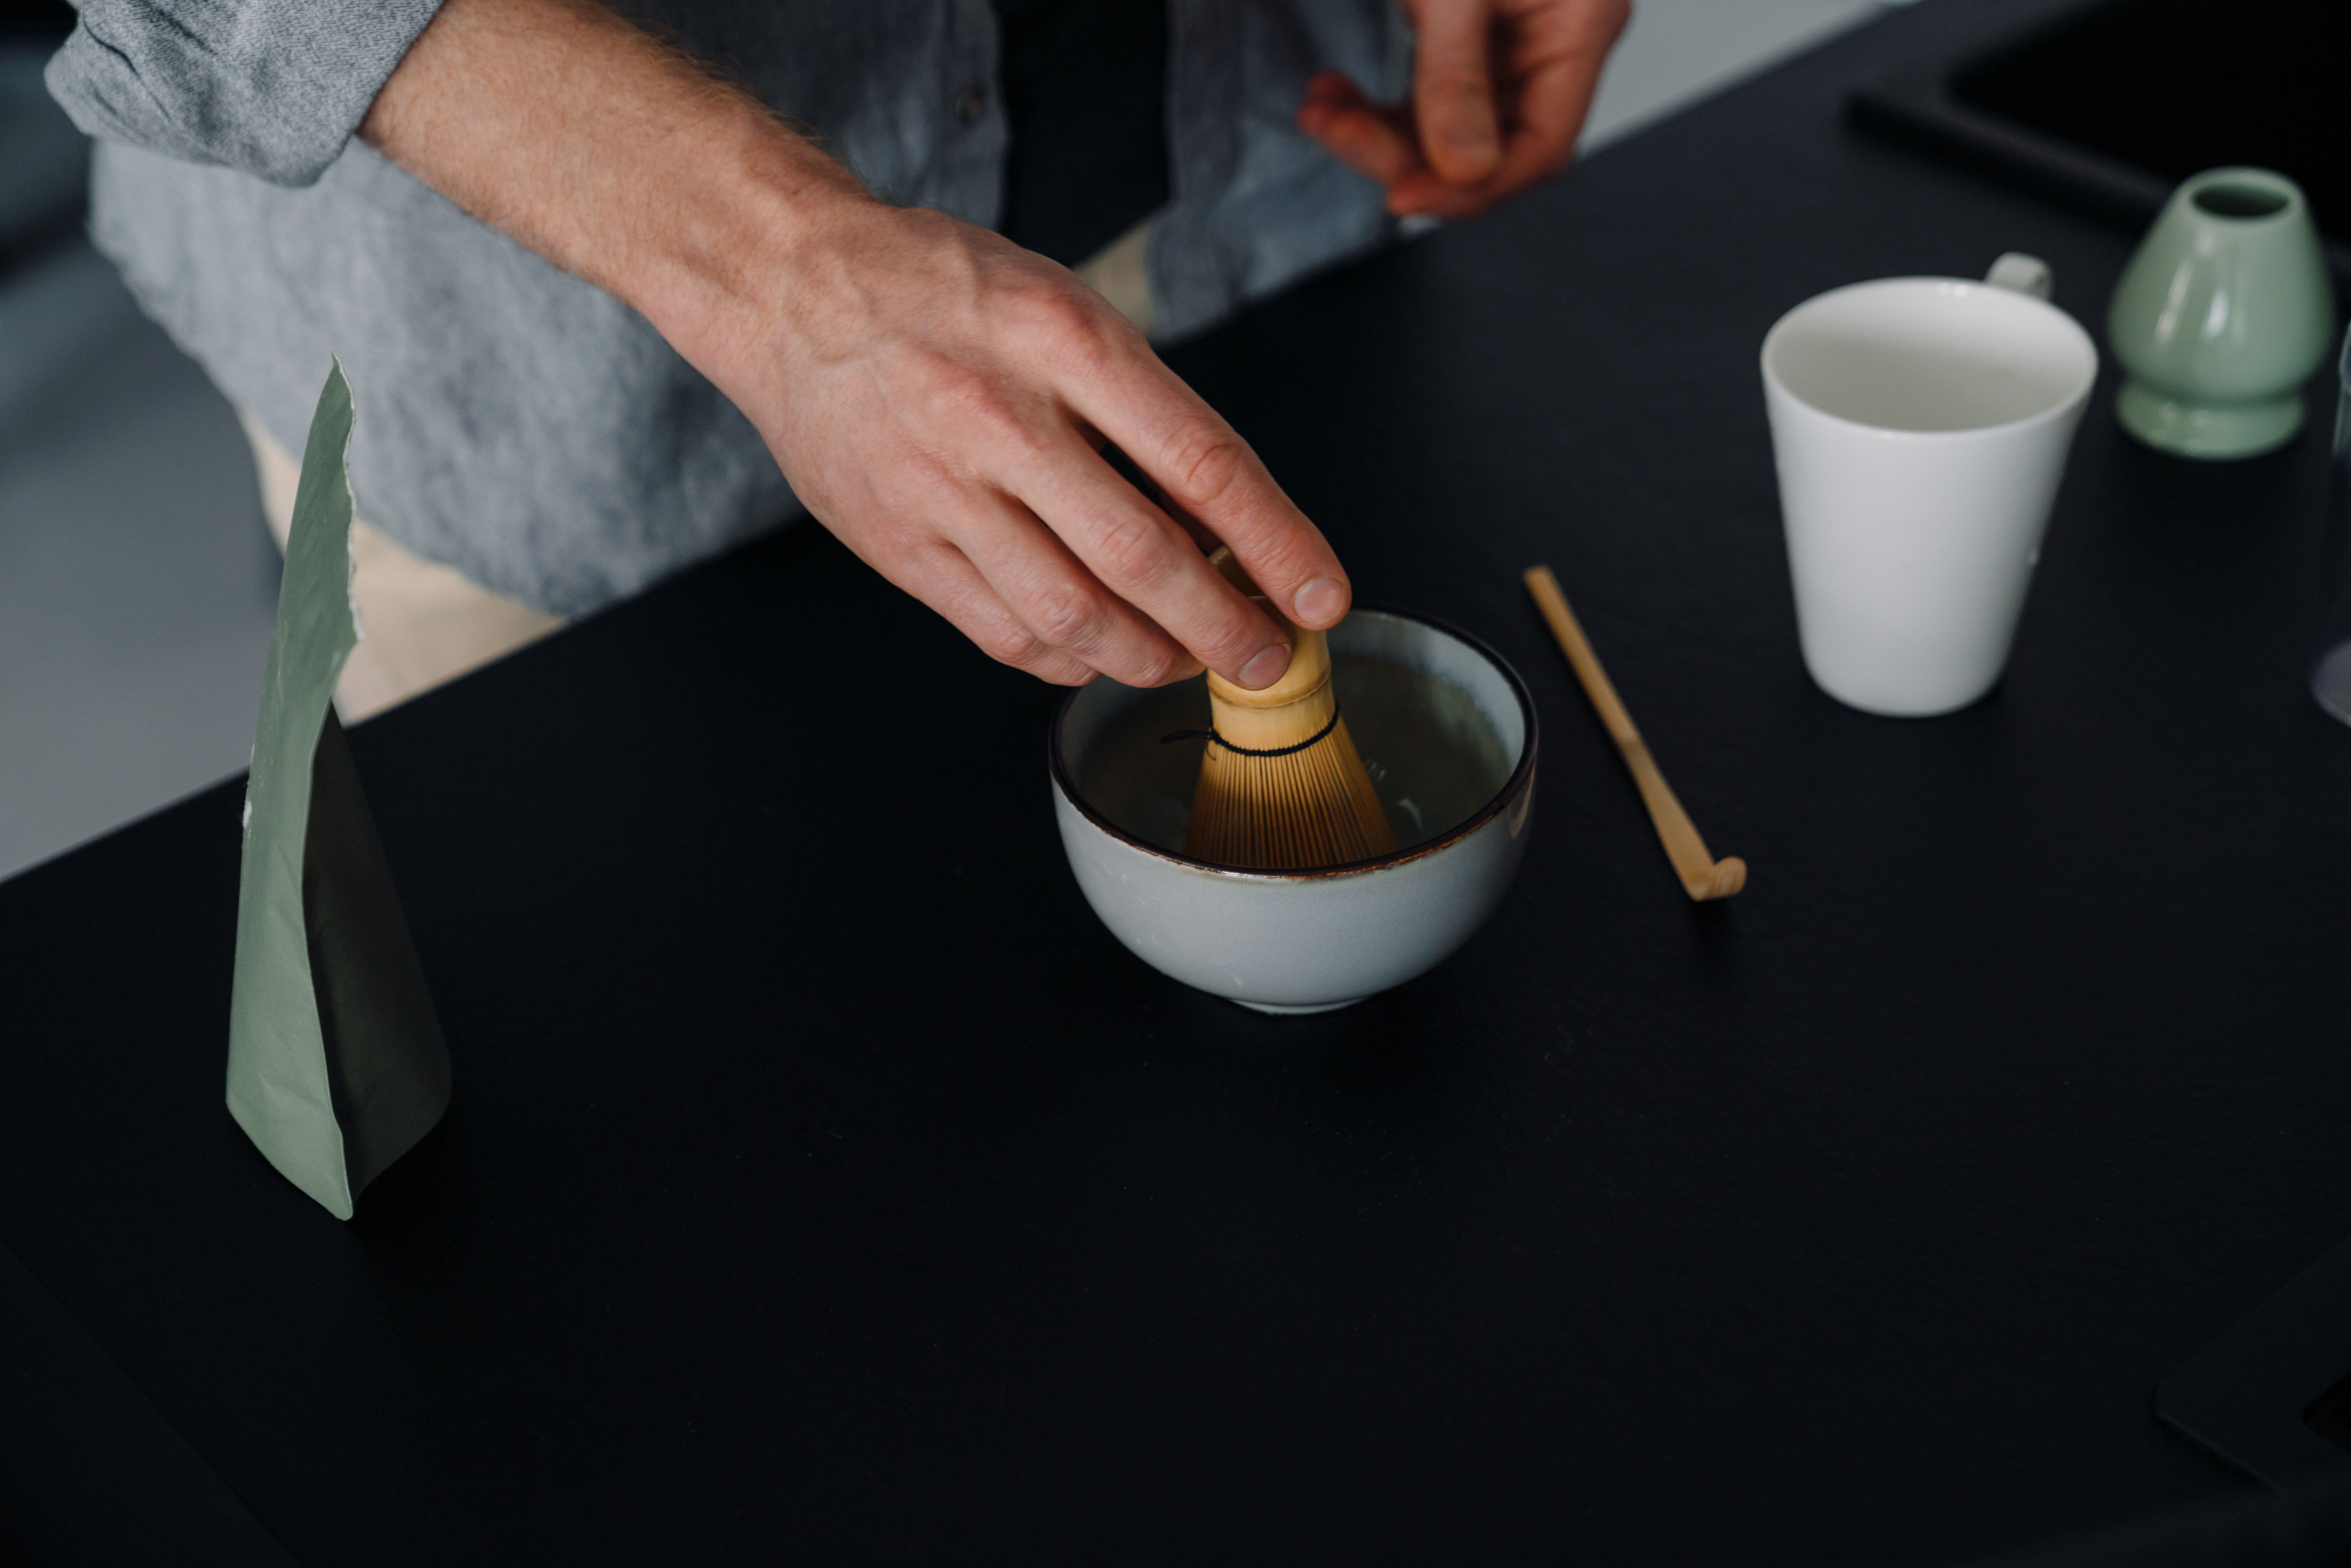 Das fertige Pulver kannst du nun im Laden kaufen und in der traditionellen Teezeremonie zu Hause anrühren. Hierfür brauchst du die passenden Utensilien Besen, Schale und Löffel.